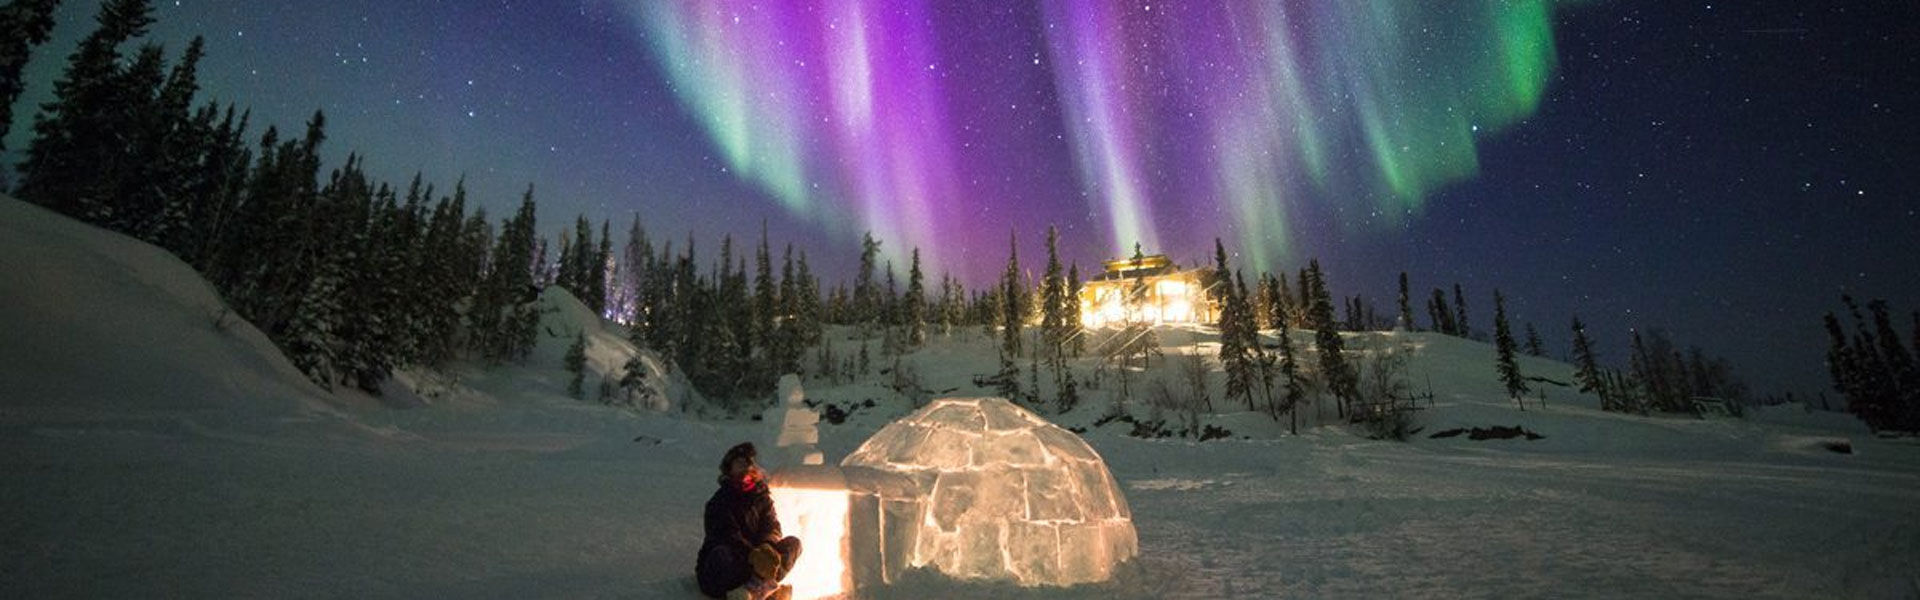 Aurora Northern Lights in Canada